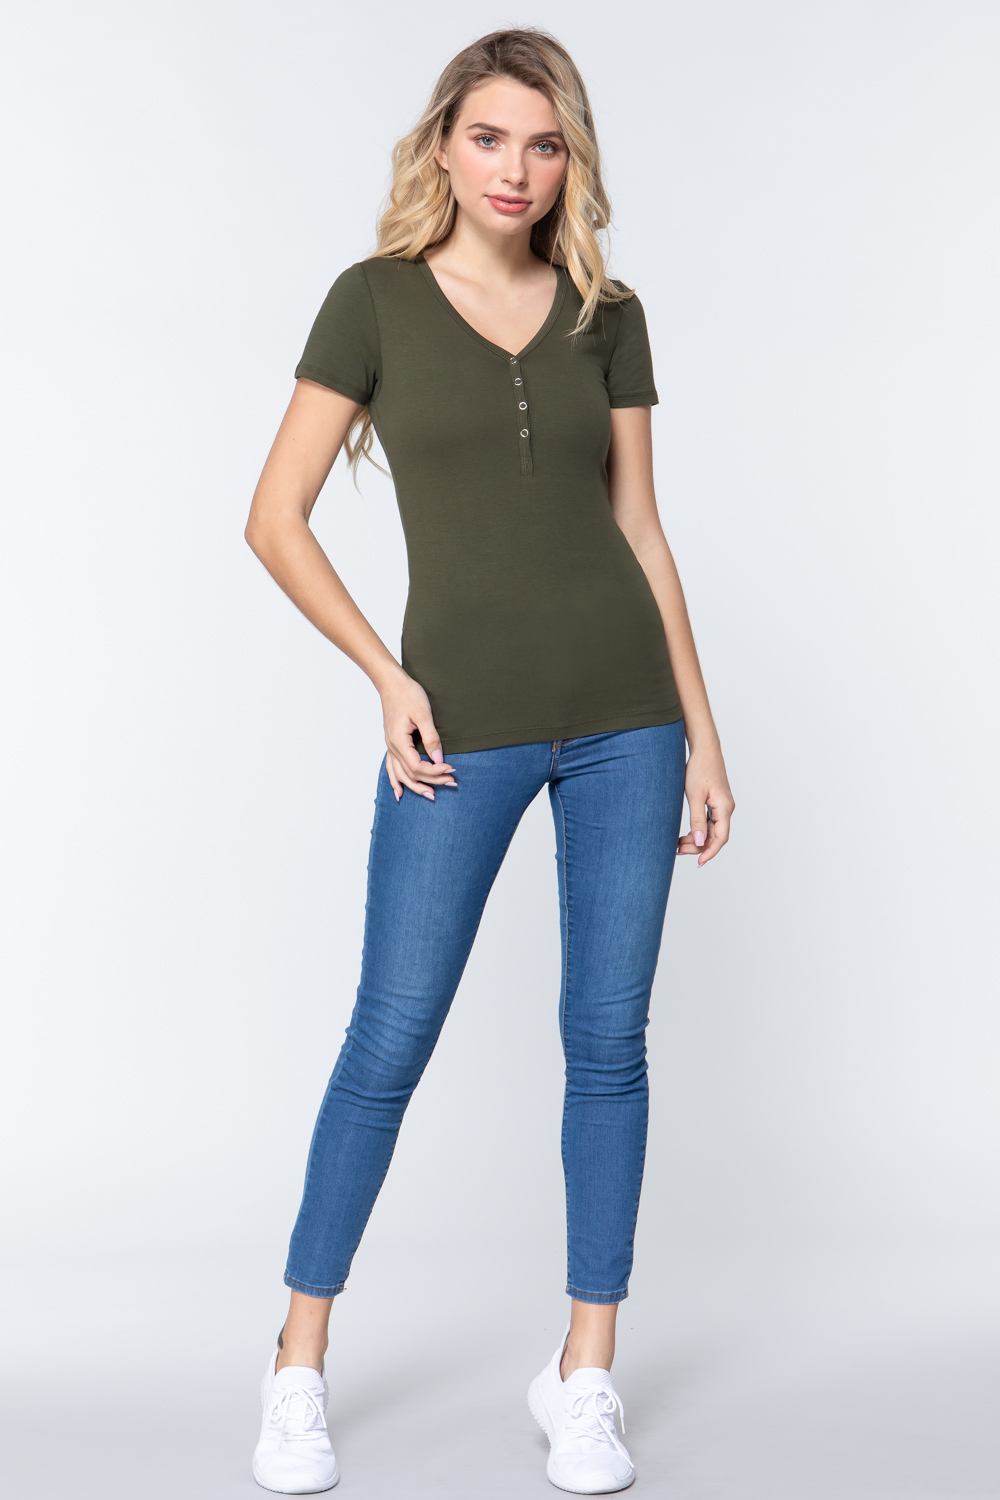 Olive Green Short Sleeve V-neck Women's Shirt